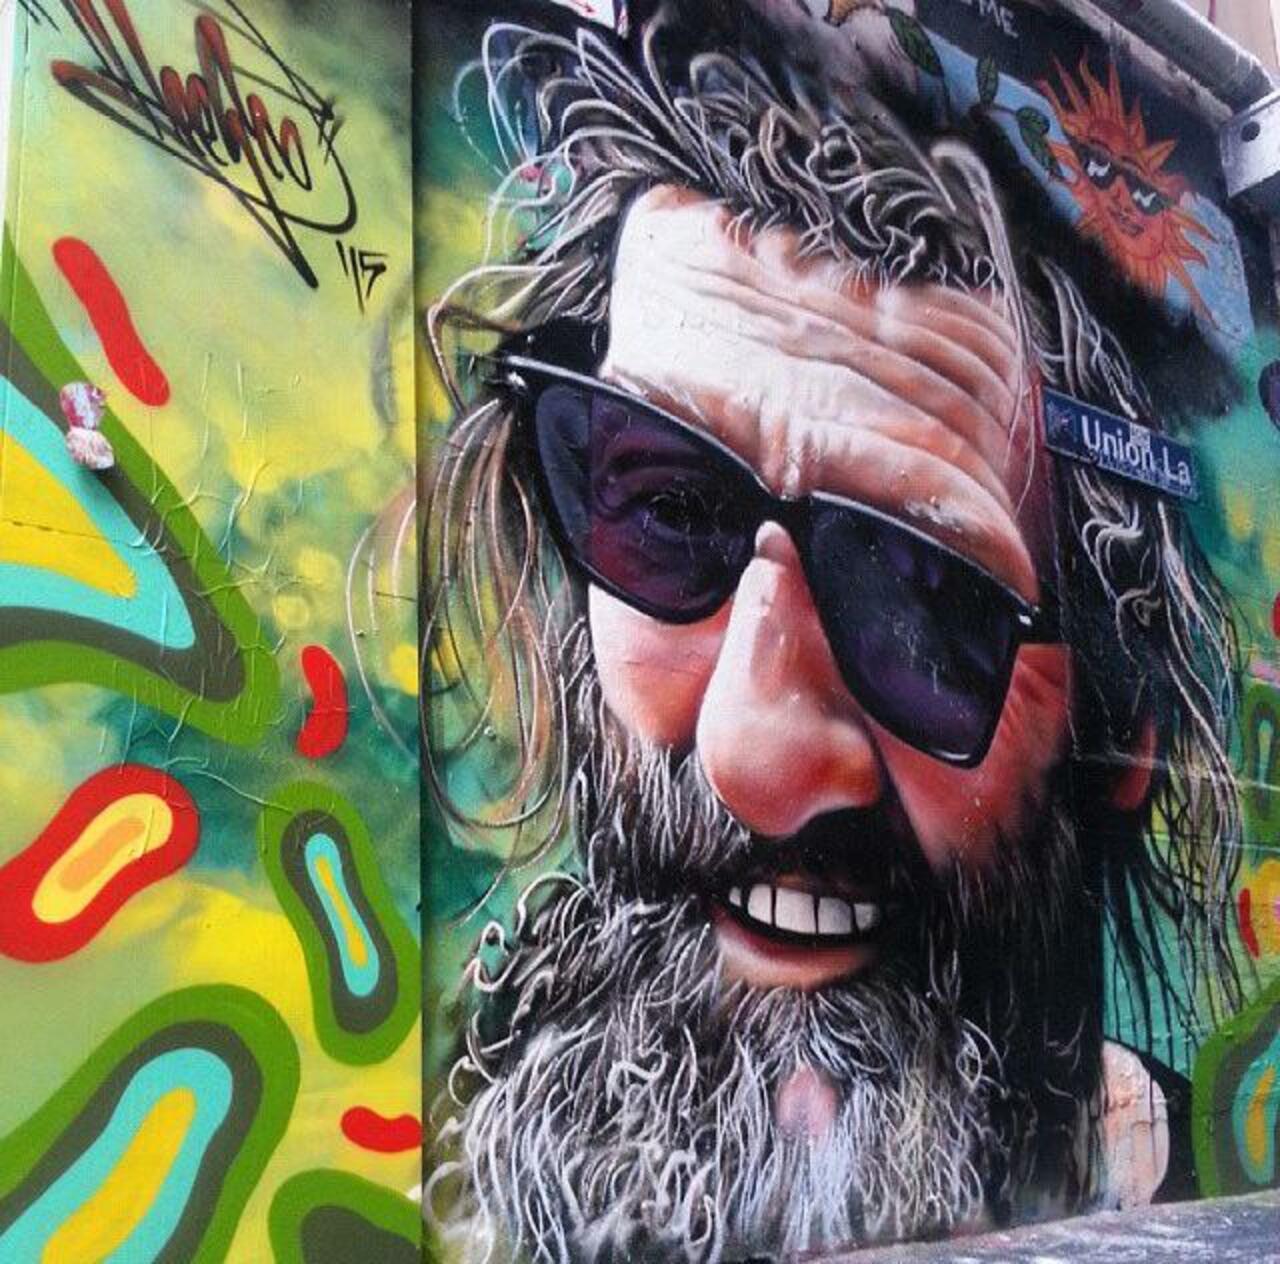 Street Art by Heesco in Melbourne 

#art #arte #graffiti #streetart http://t.co/Jrzezy5wKC